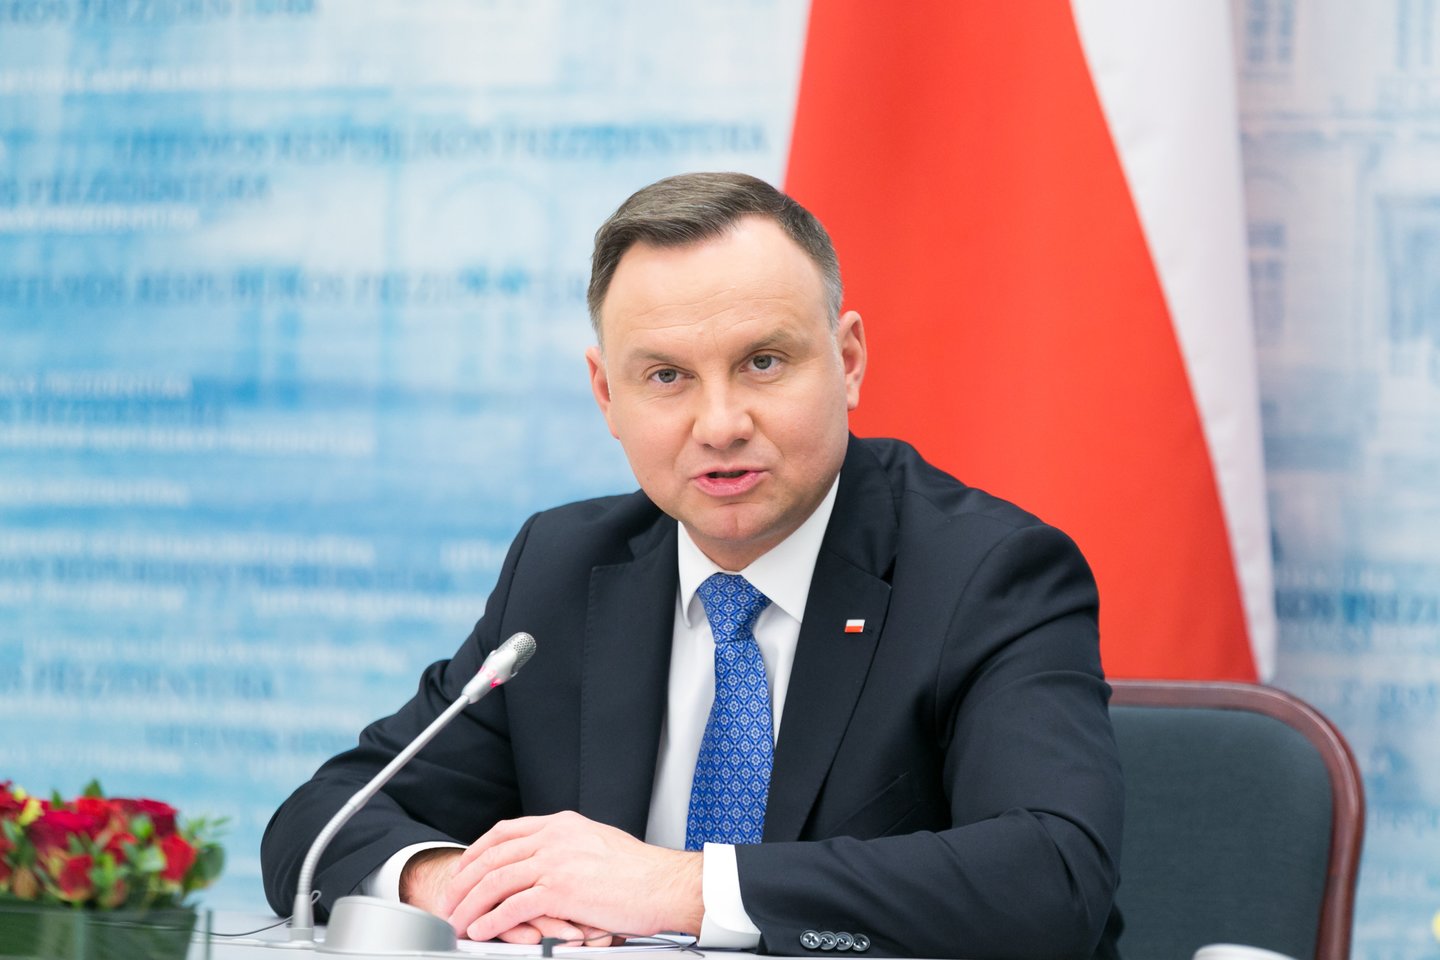 Lenkijos prezidentas Andrzejus Duda ketvirtadienį pakvietė Lietuvos vadovą Gitaną Nausėdą į kitąmet vyksiančias 610-ąsias Žalgirio mūšio minėjimo metines. <br>T.Bauro nuotr.